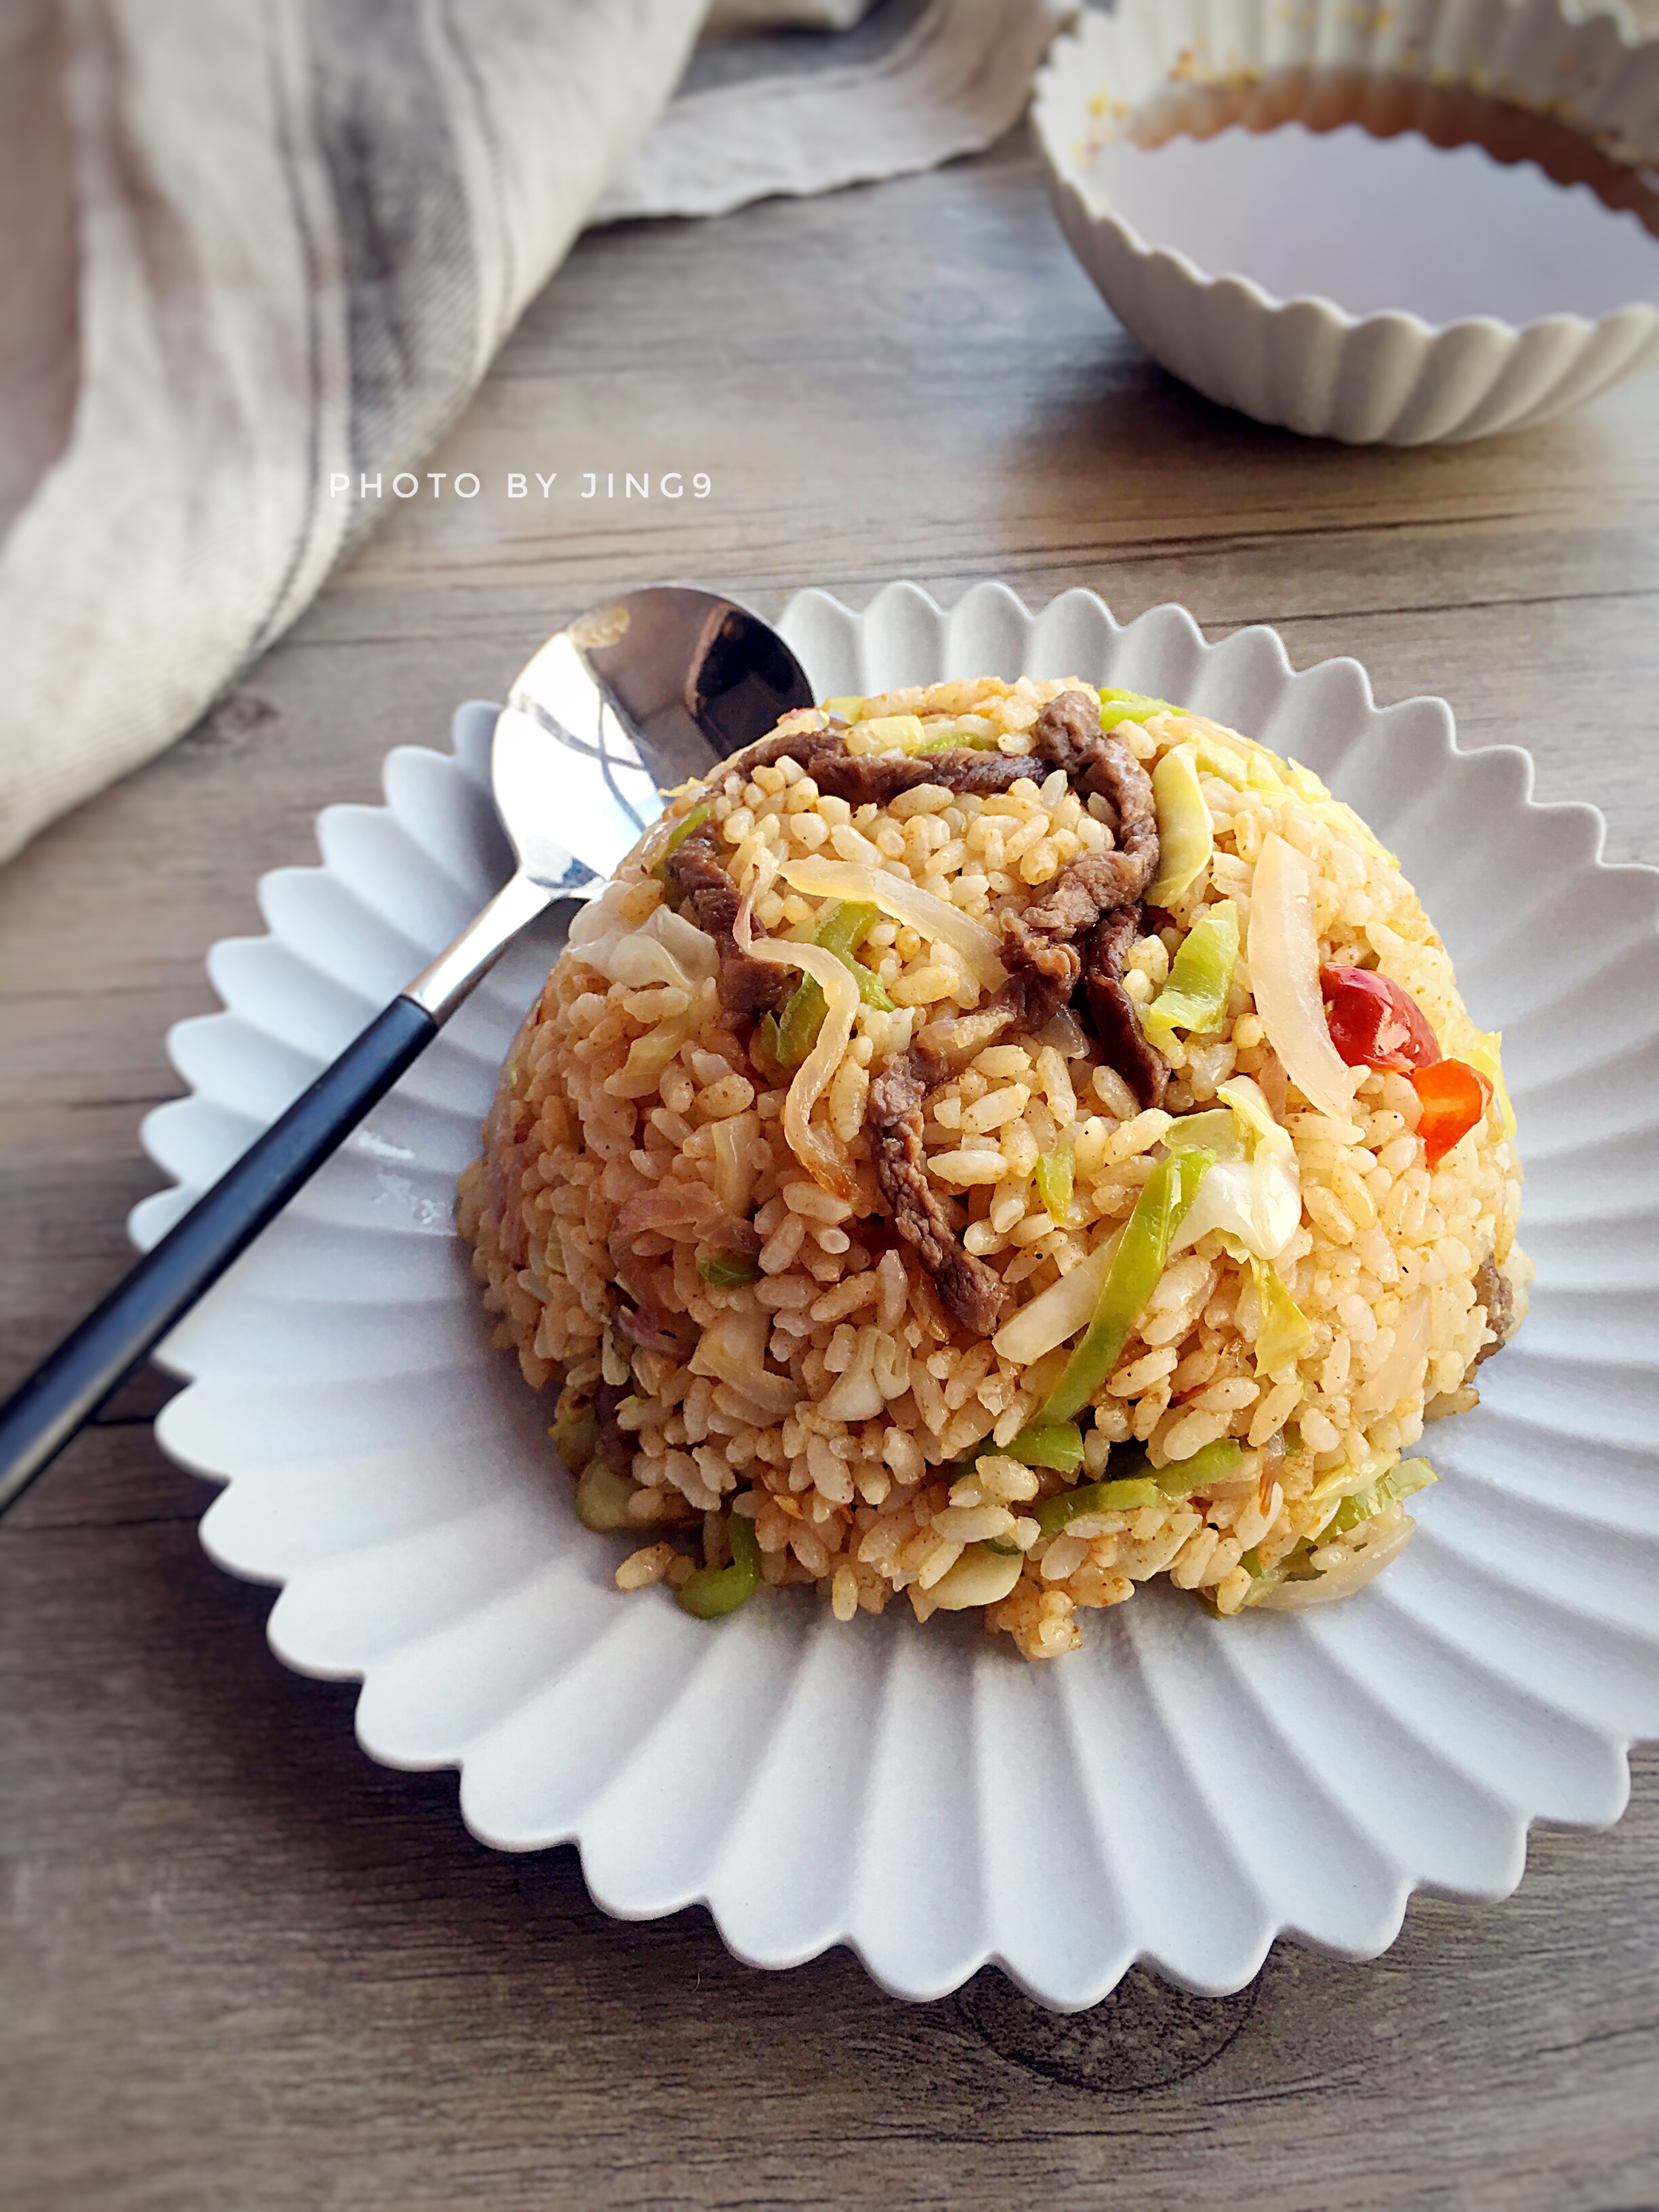 【西安小吃系列】 8:复刻西安回民街人气美食-红红酸菜炒米的做法